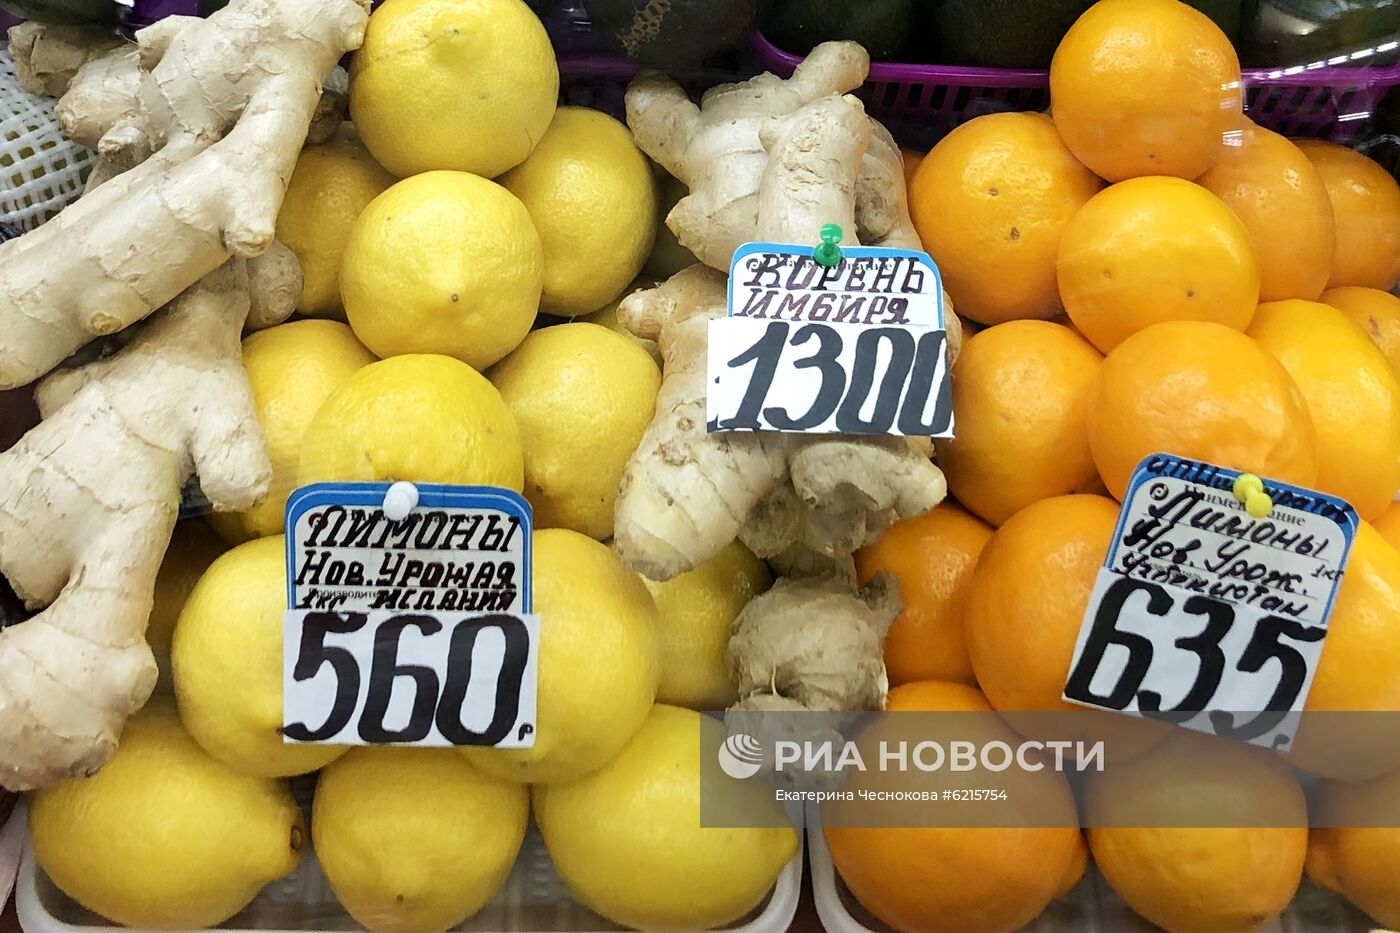 Продажа имбиря и лимонов в магазинах 